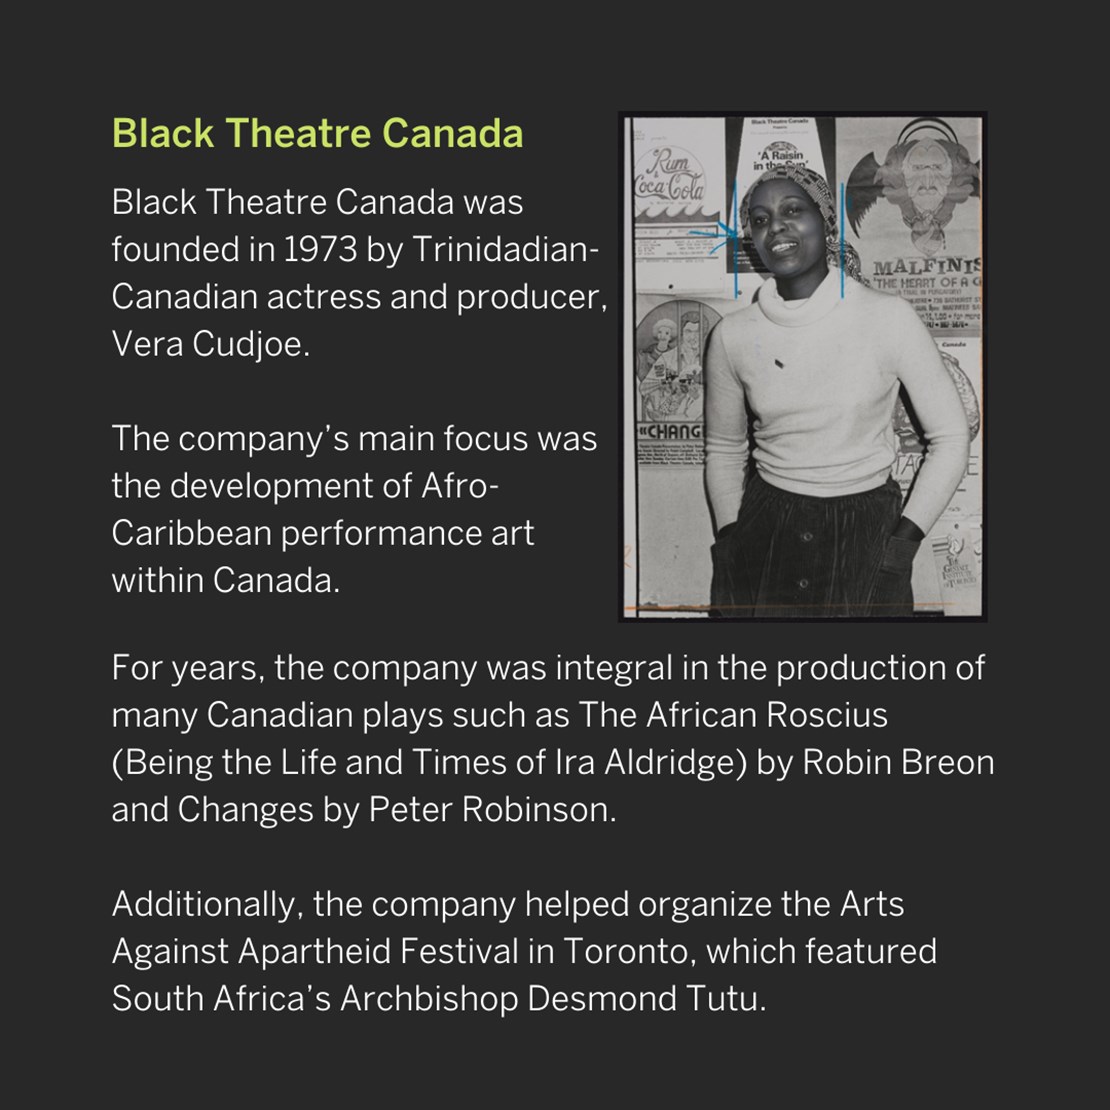 Black Theatre Canada